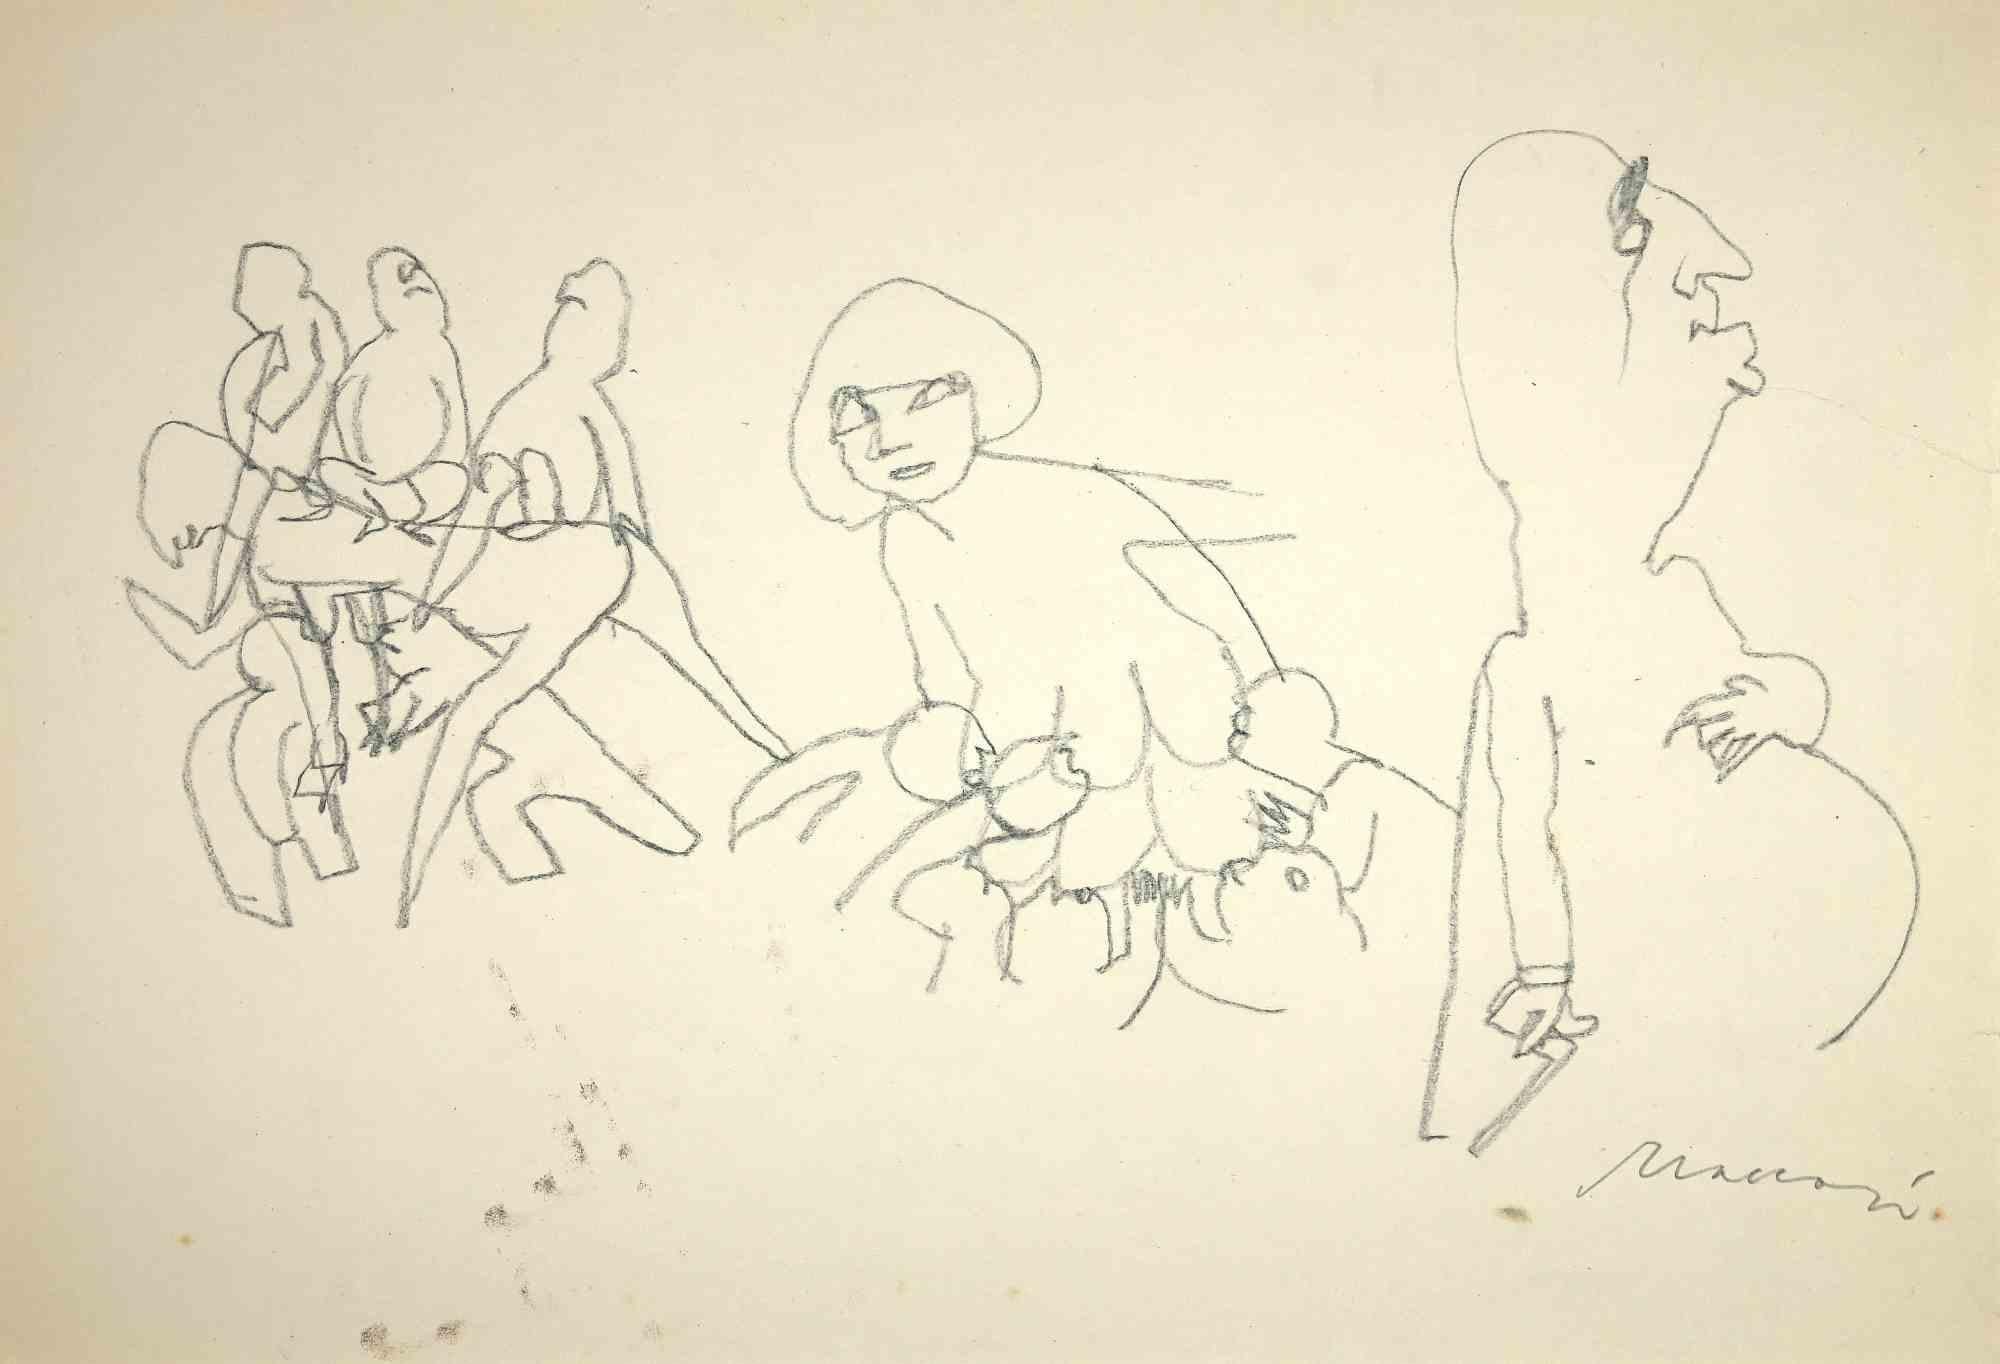 Die Mutterschaft ist eine Originalzeichnung in Bleistiftkohle auf cremefarbenem Papier von Mino Maccari aus der Mitte des 20. Jahrhunderts. 

Handsigniert vom Künstler auf der Unterseite.

Guter Zustand mit einigen Stockflecken und Beschnitt an den